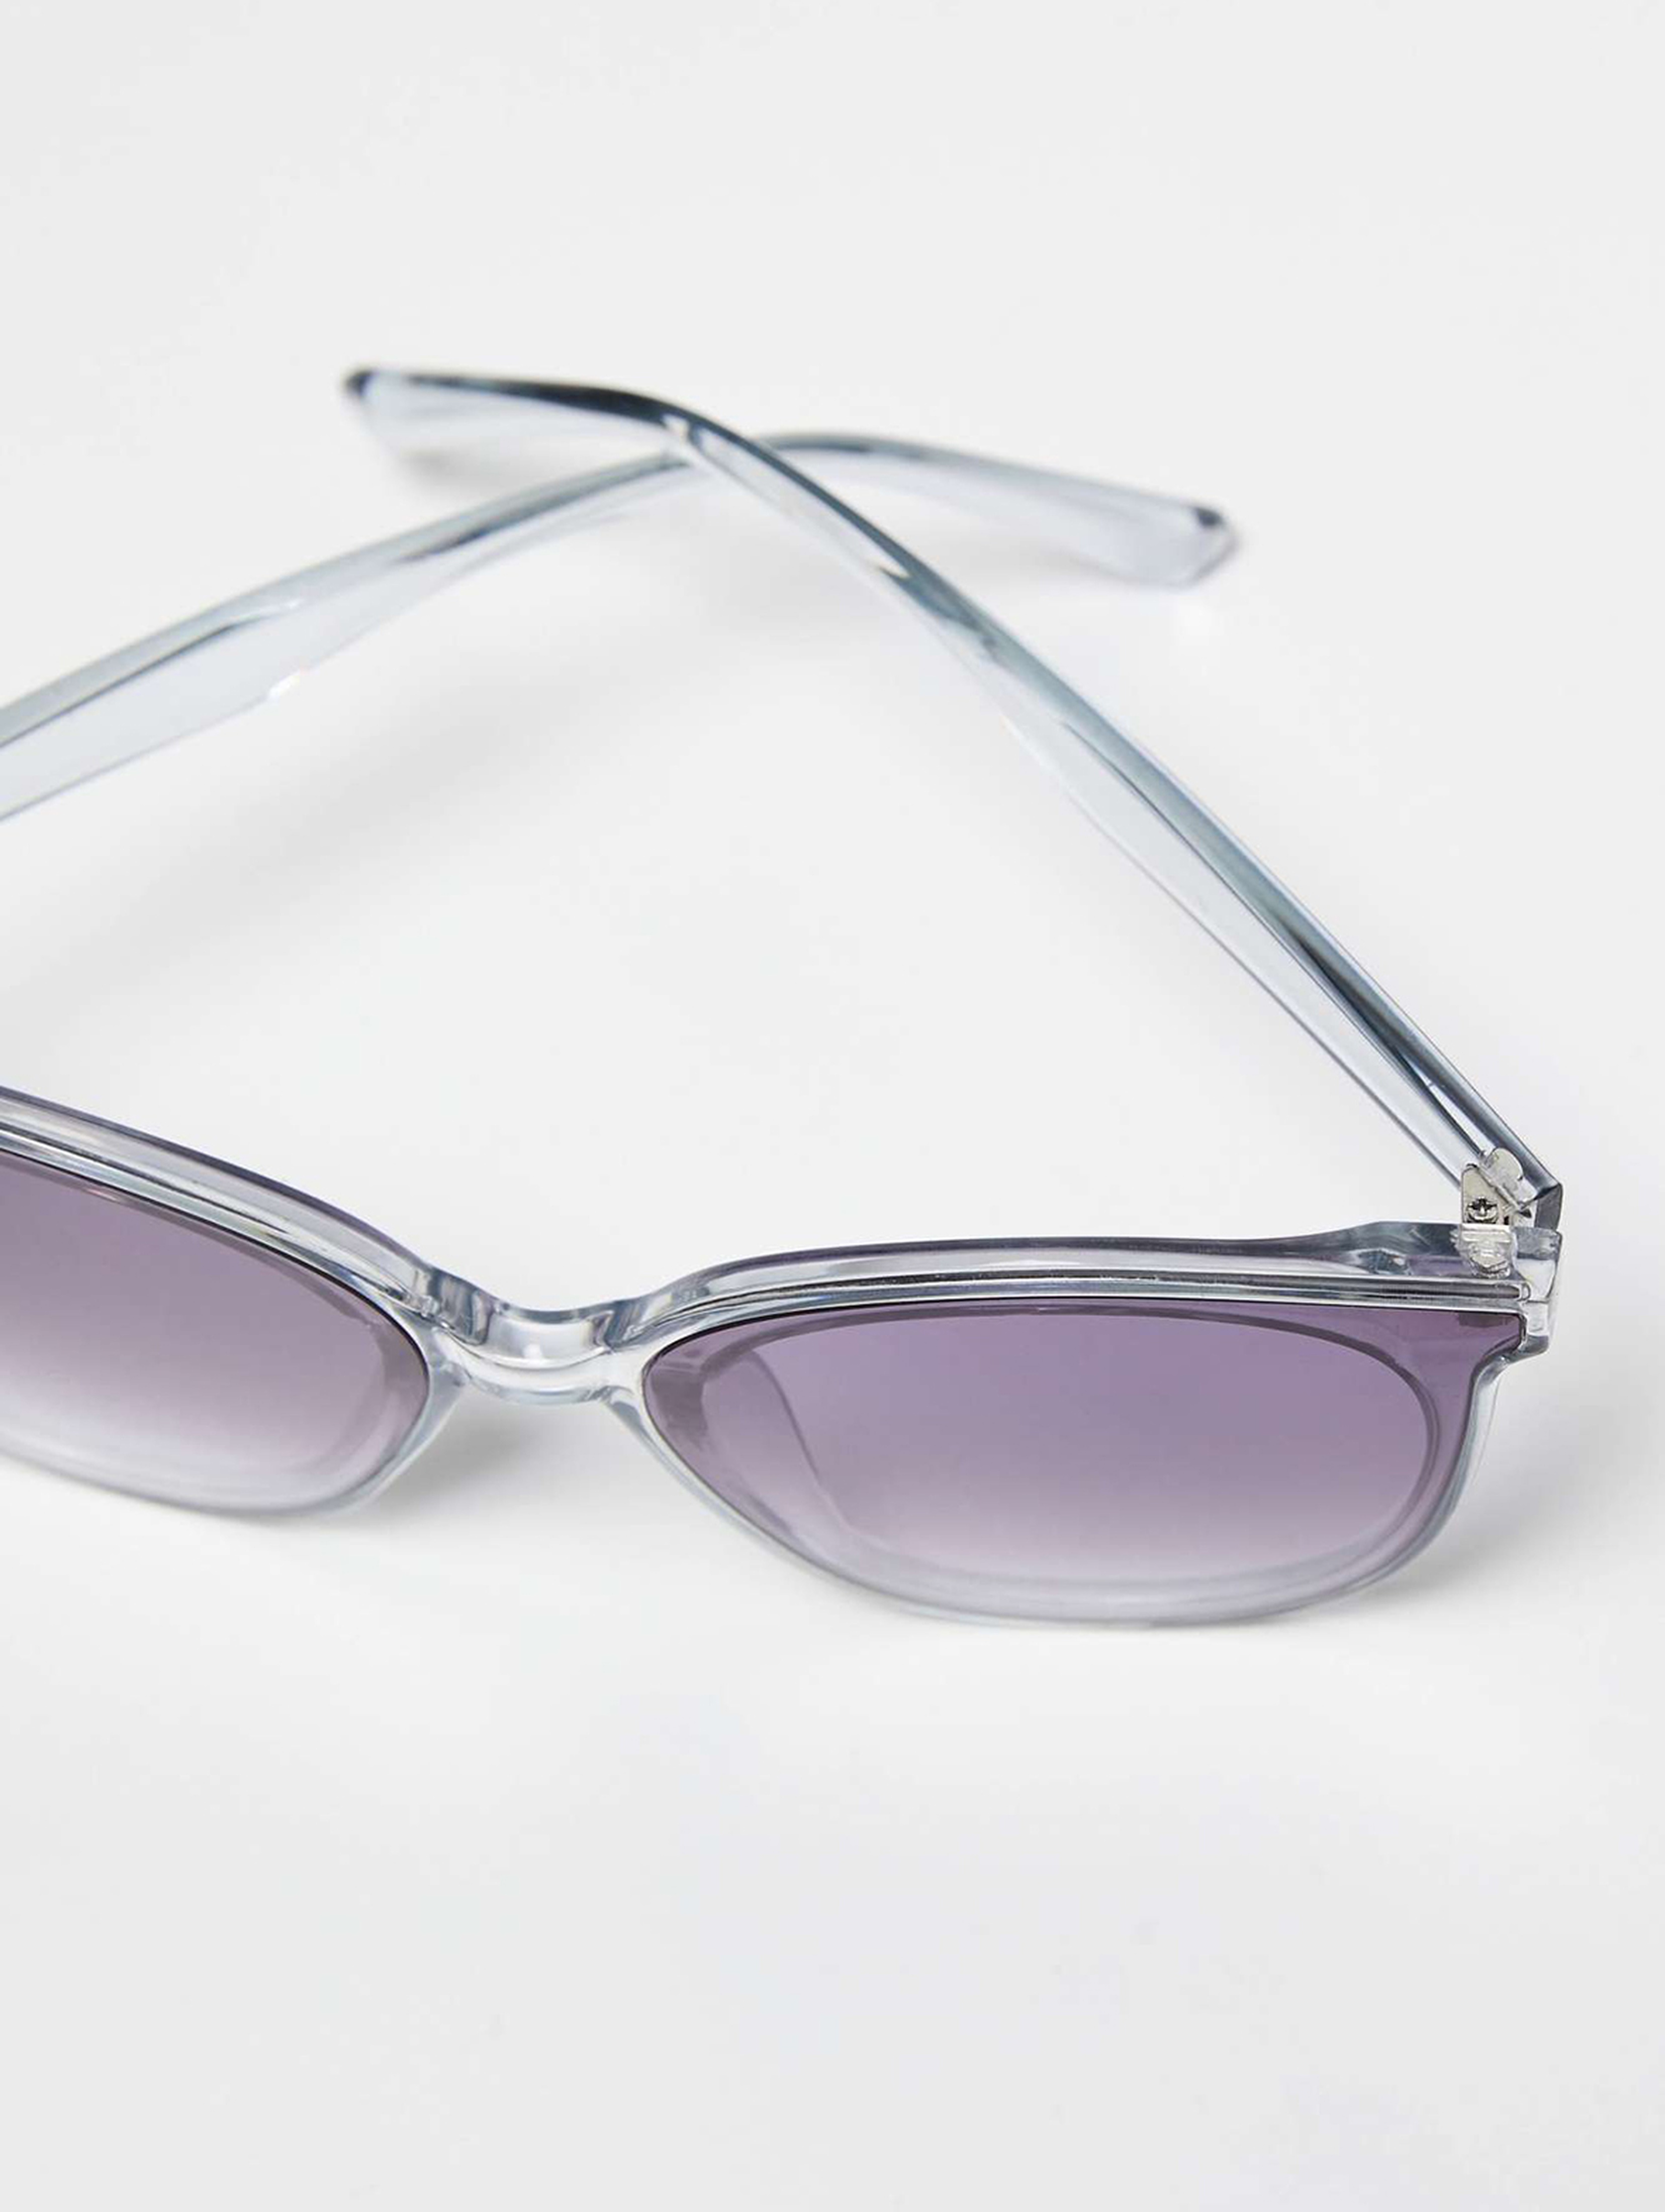 Okulary przeciwsłoneczne przezroczyste - szare